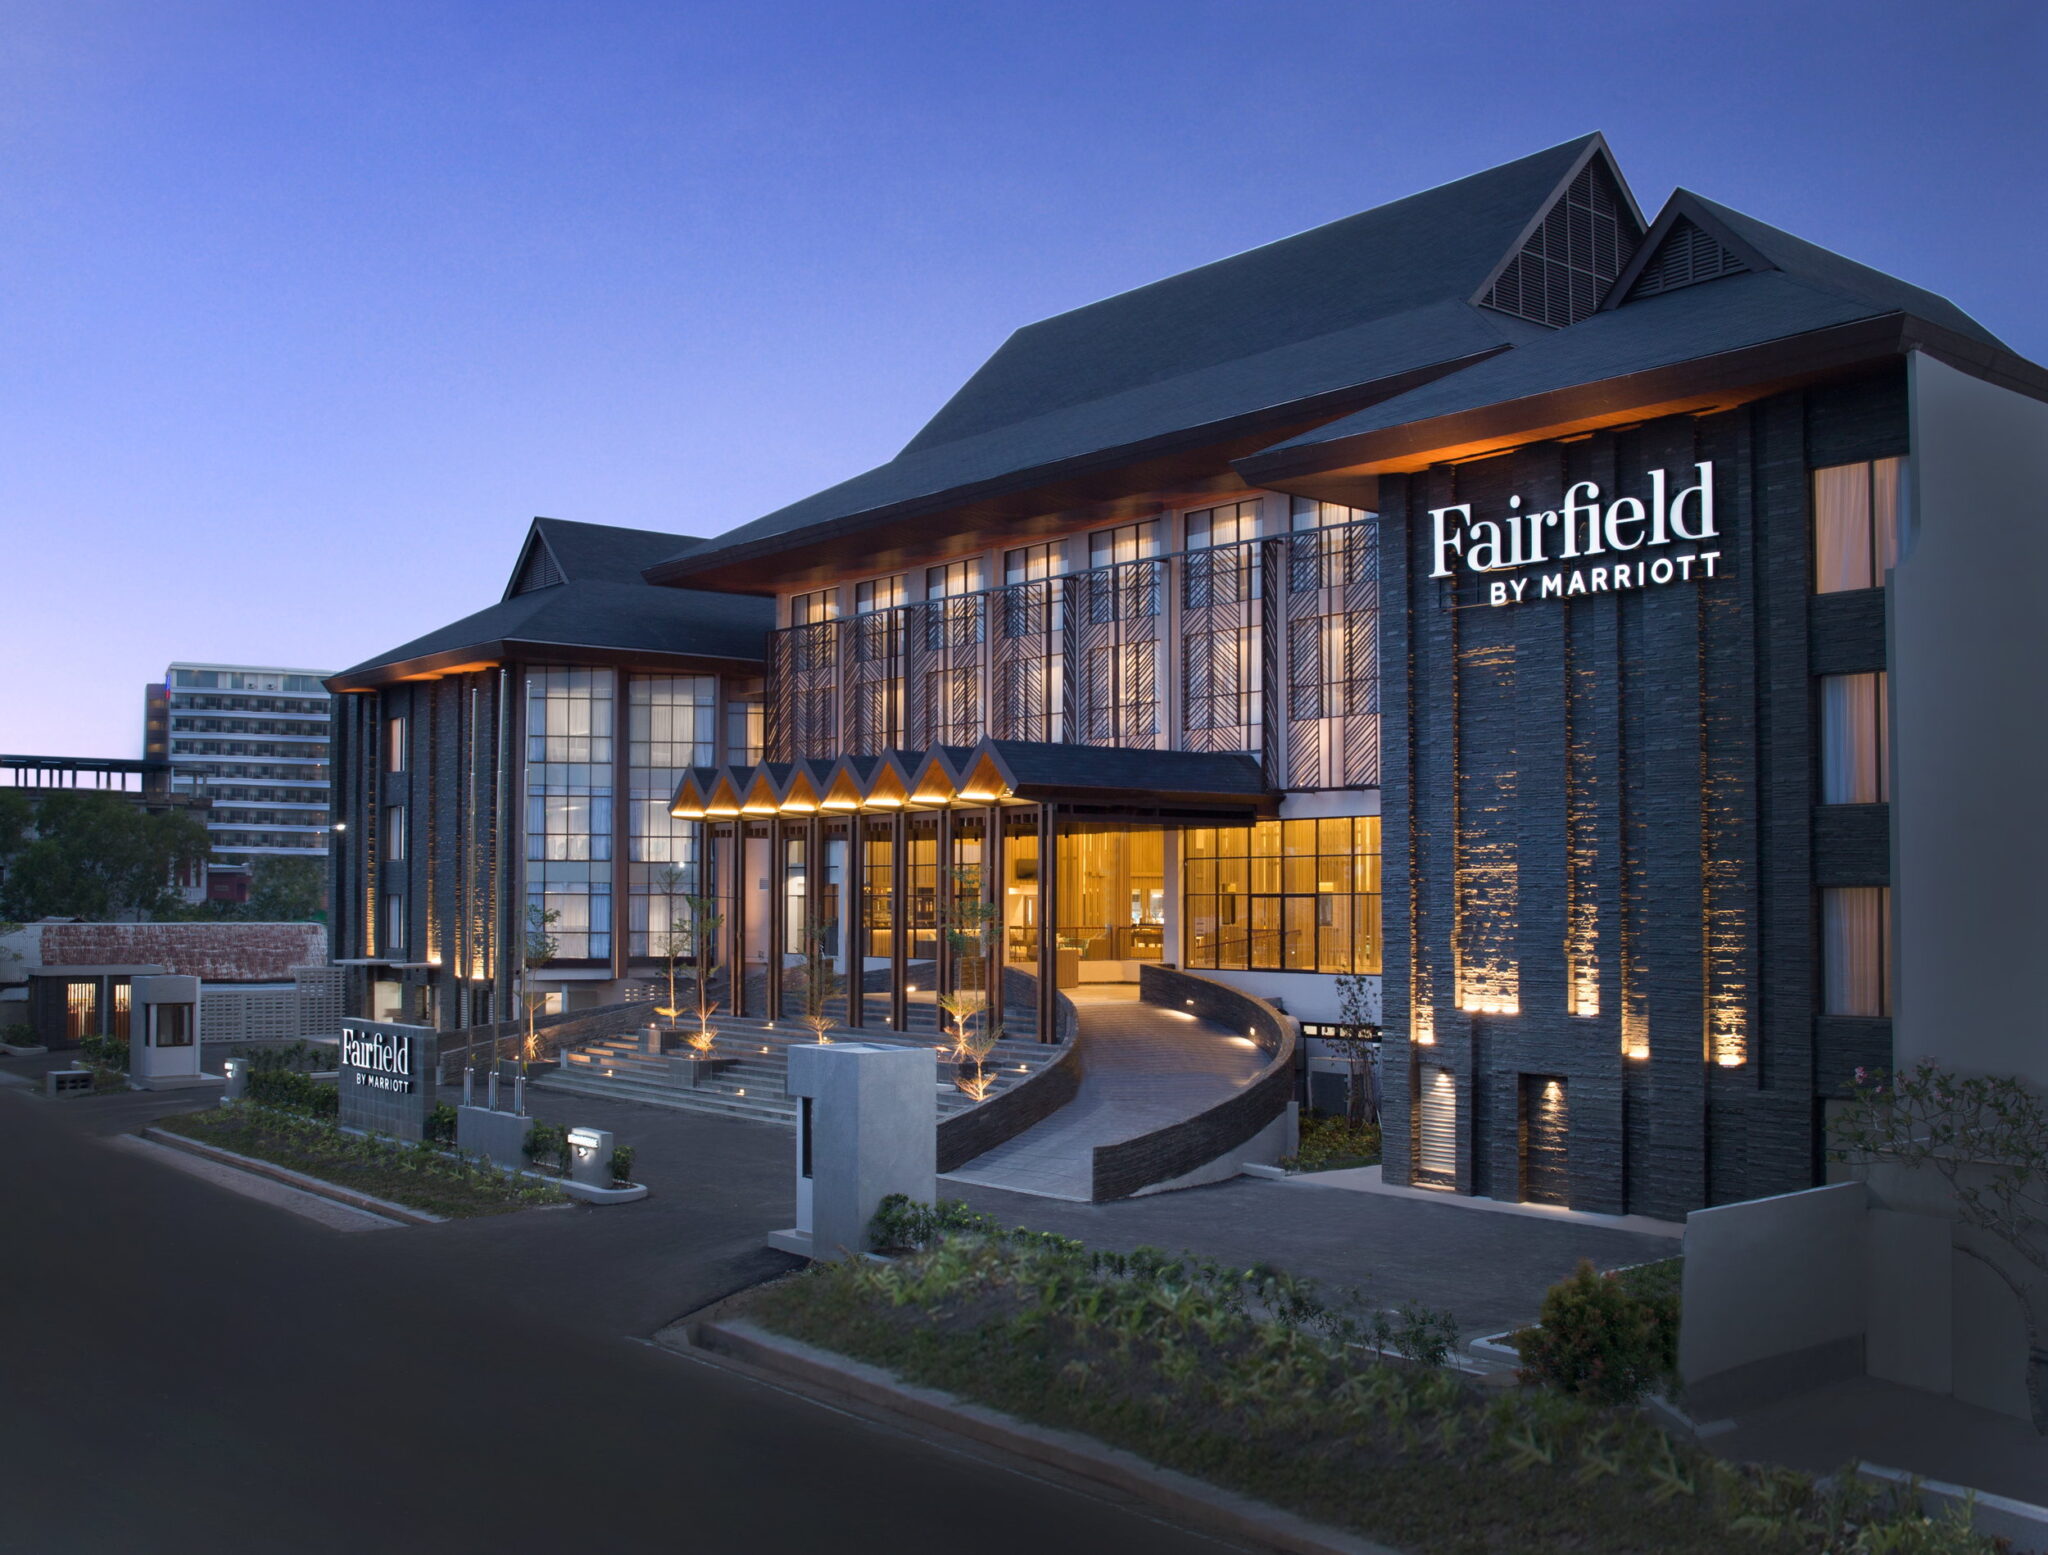 Fairfield by Marriott Resort